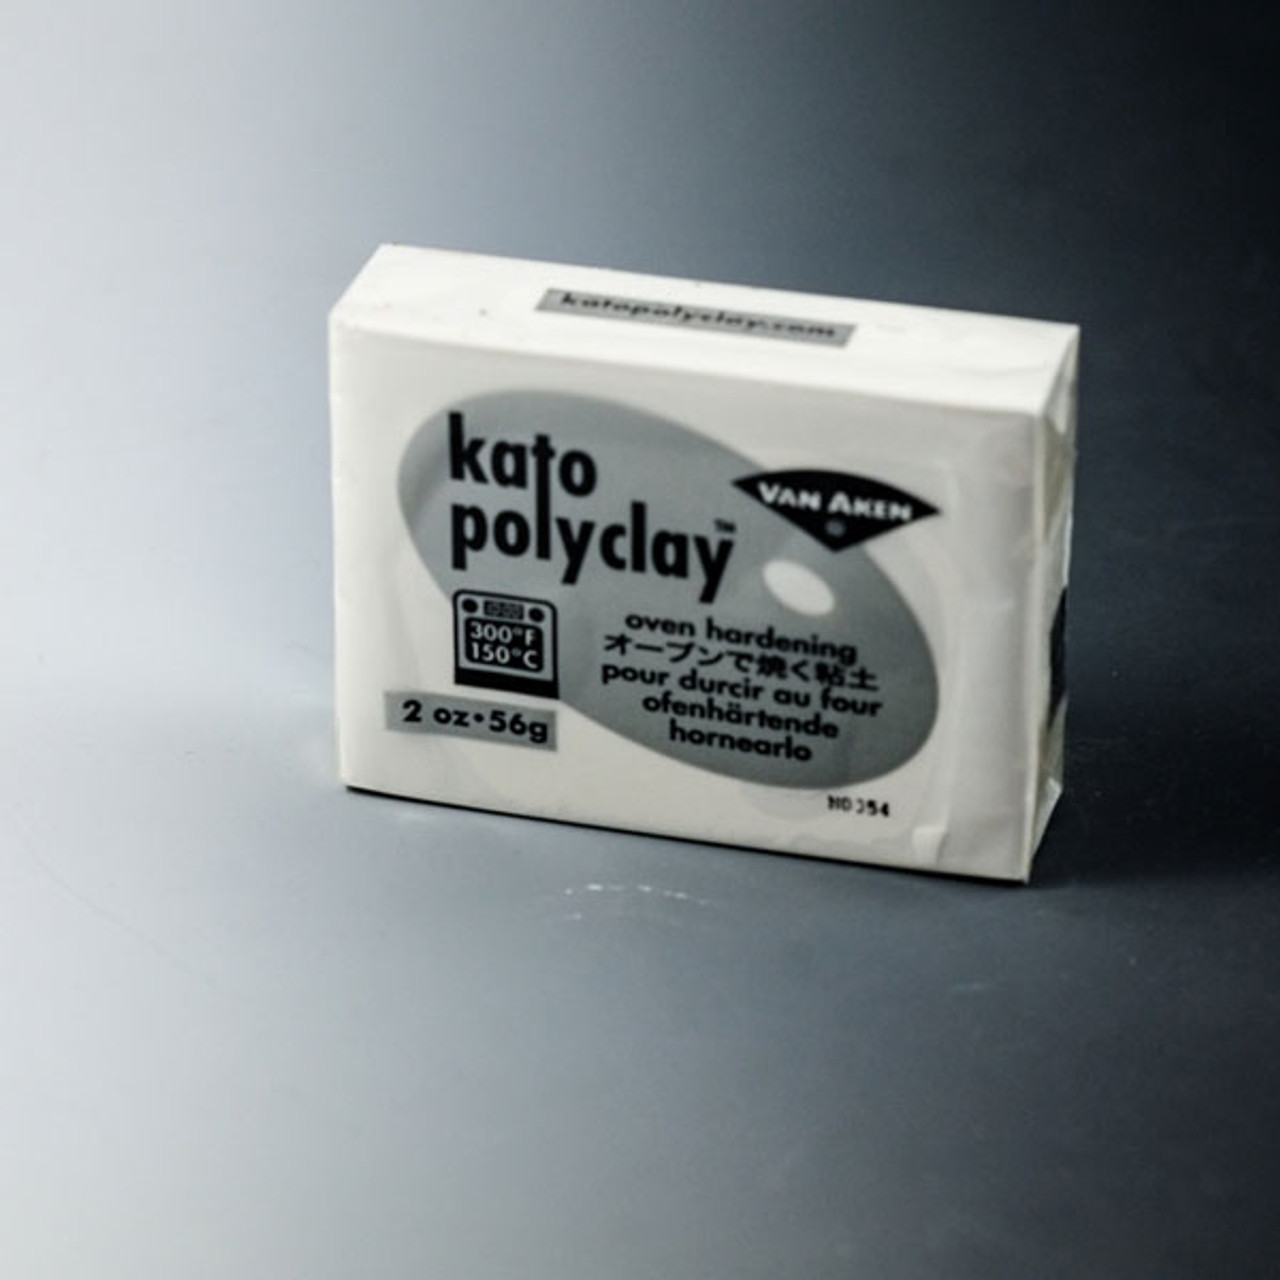 Kato Polyclay -- White